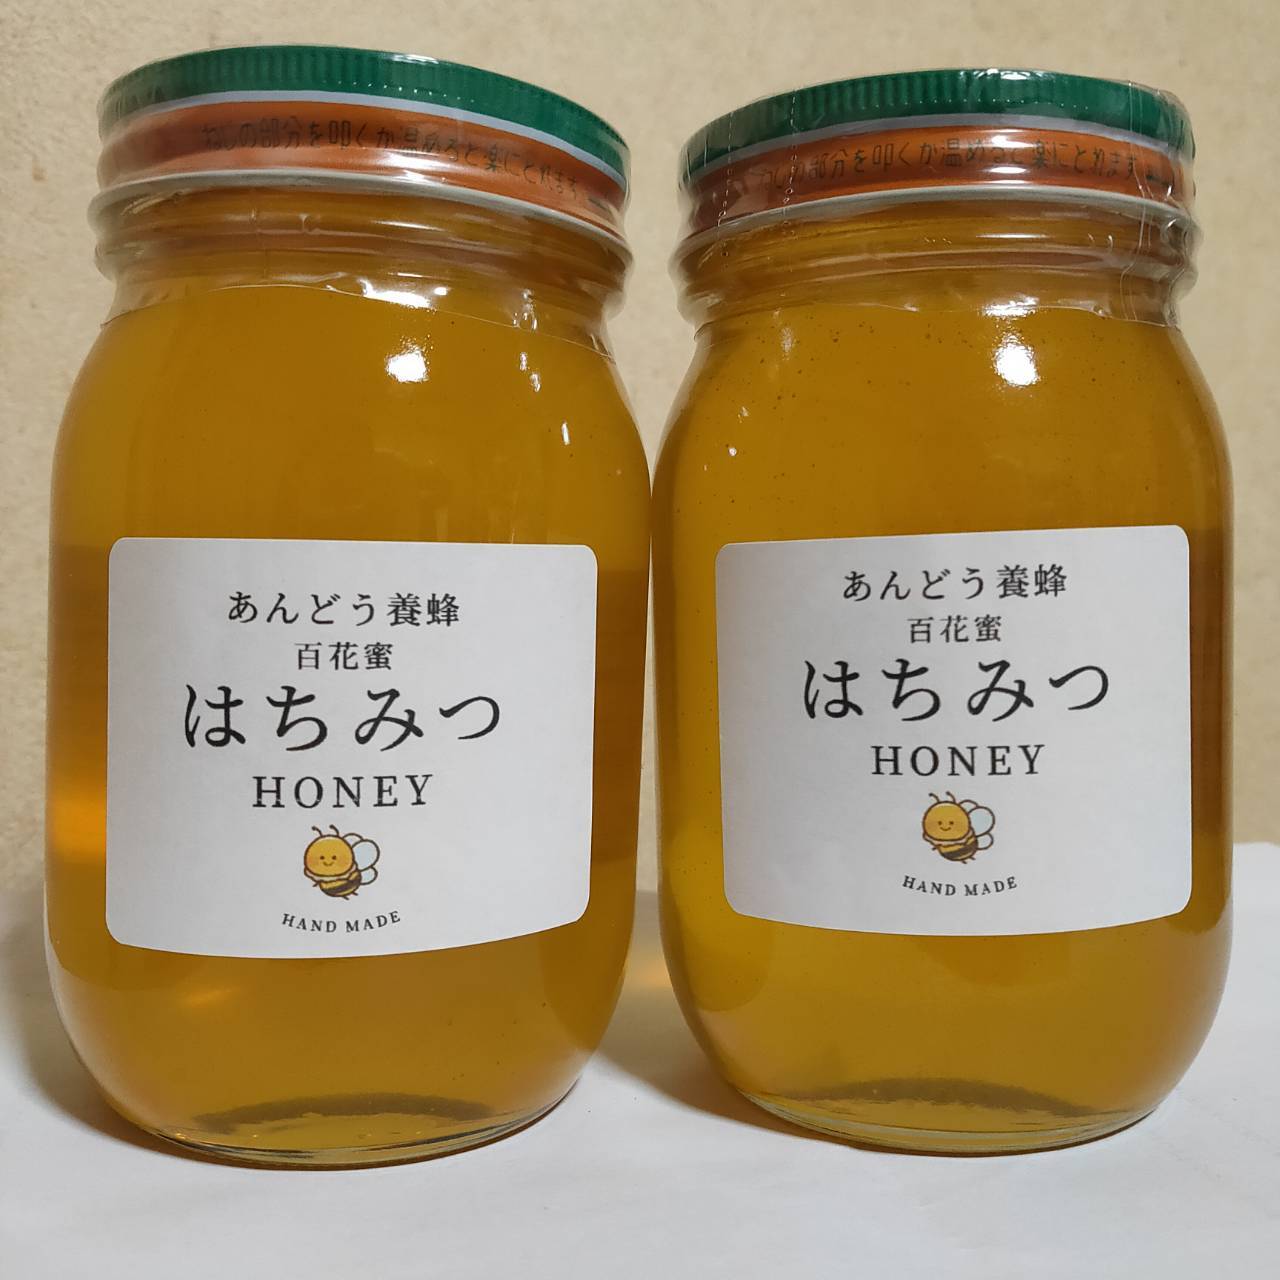 日本蜜蜂(秋採れ2年熟成生ハチミツ)600g×2本+50g×